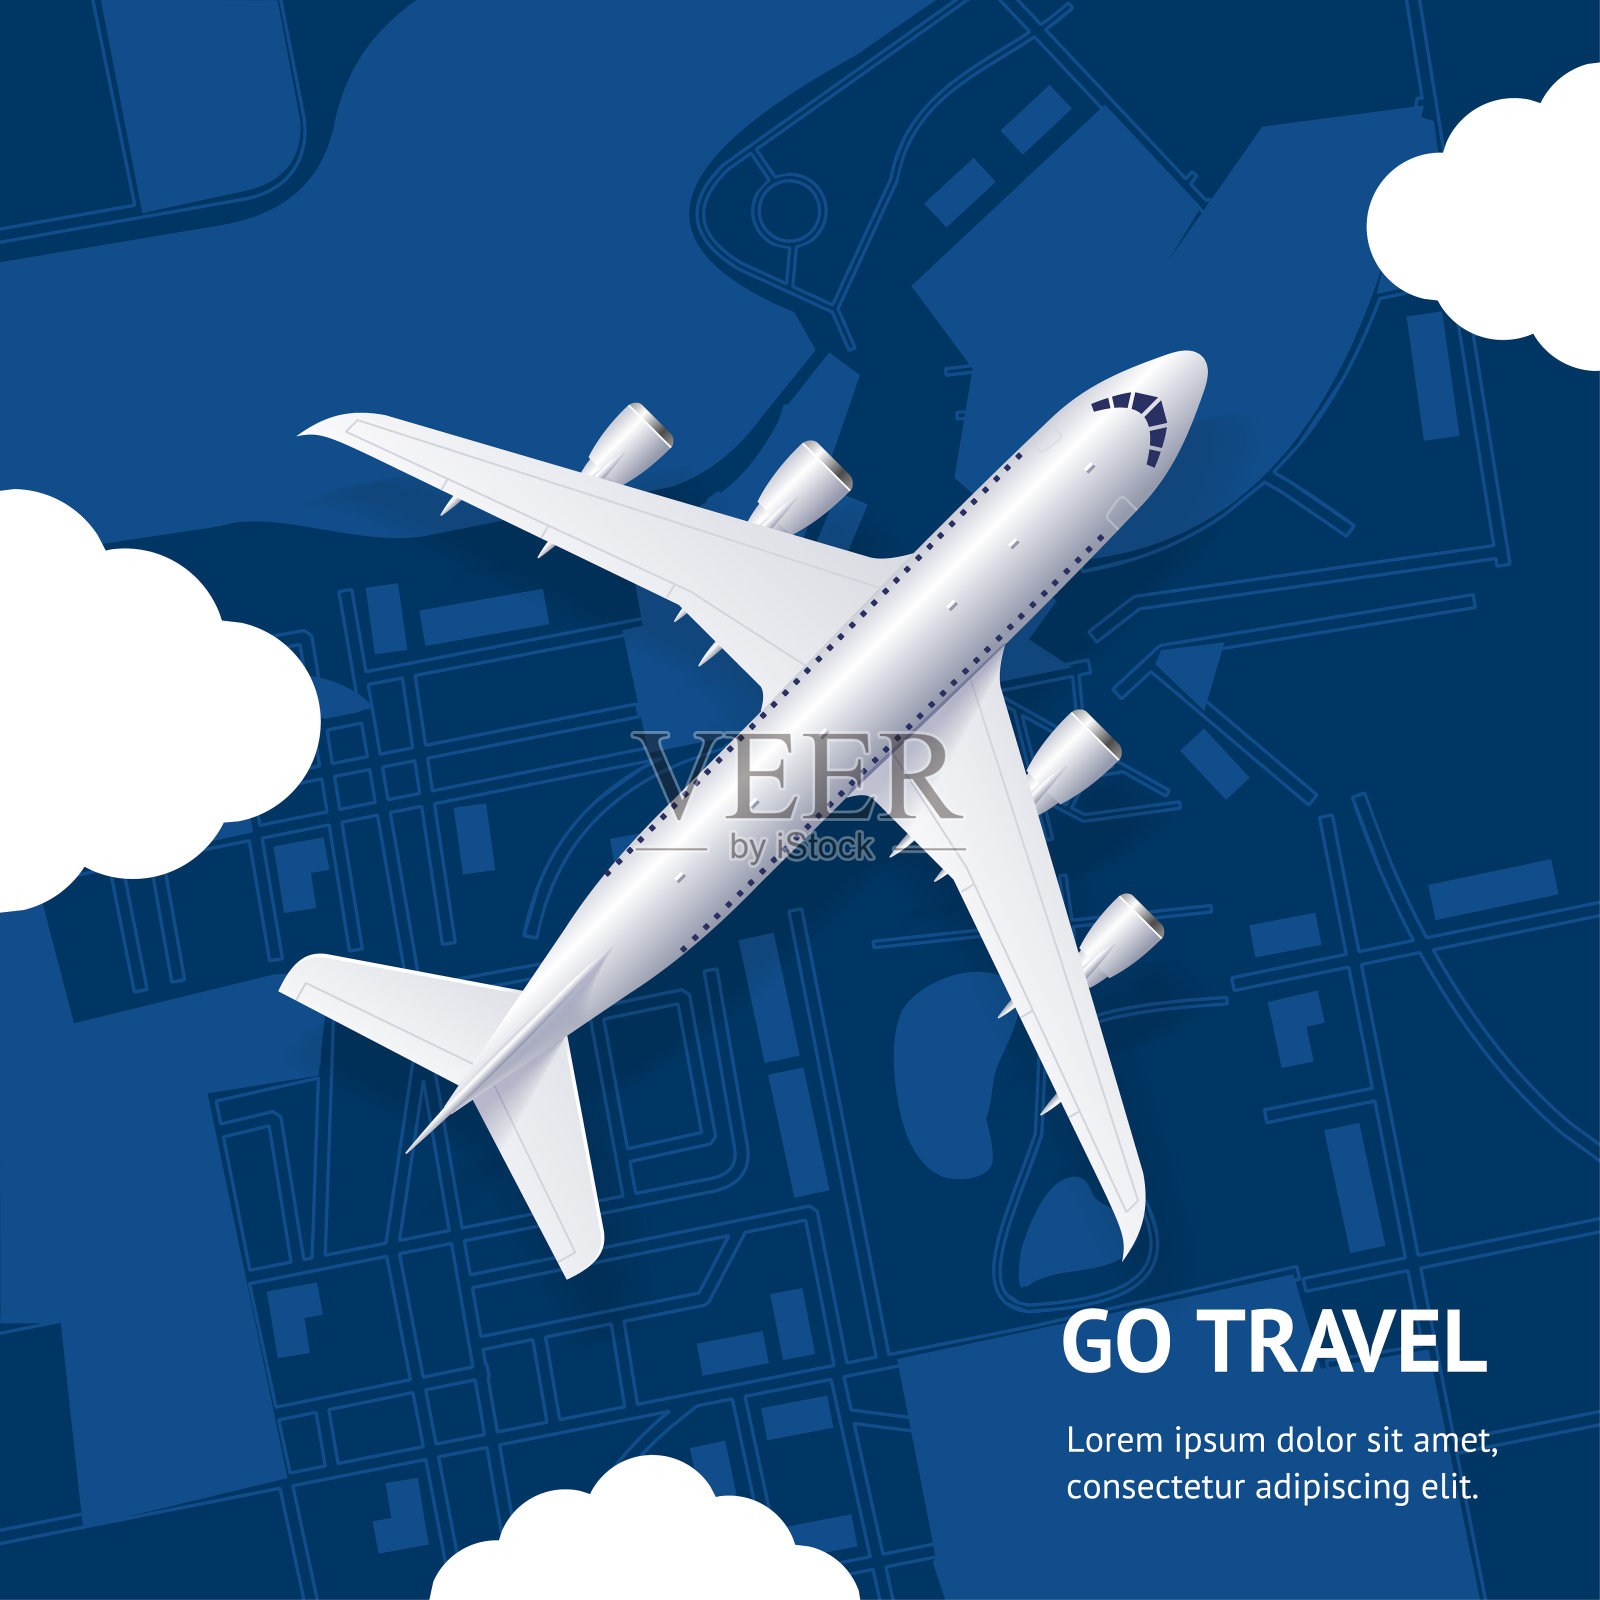 逼真的3d详细的飞机和去旅行概念卡。向量设计模板素材